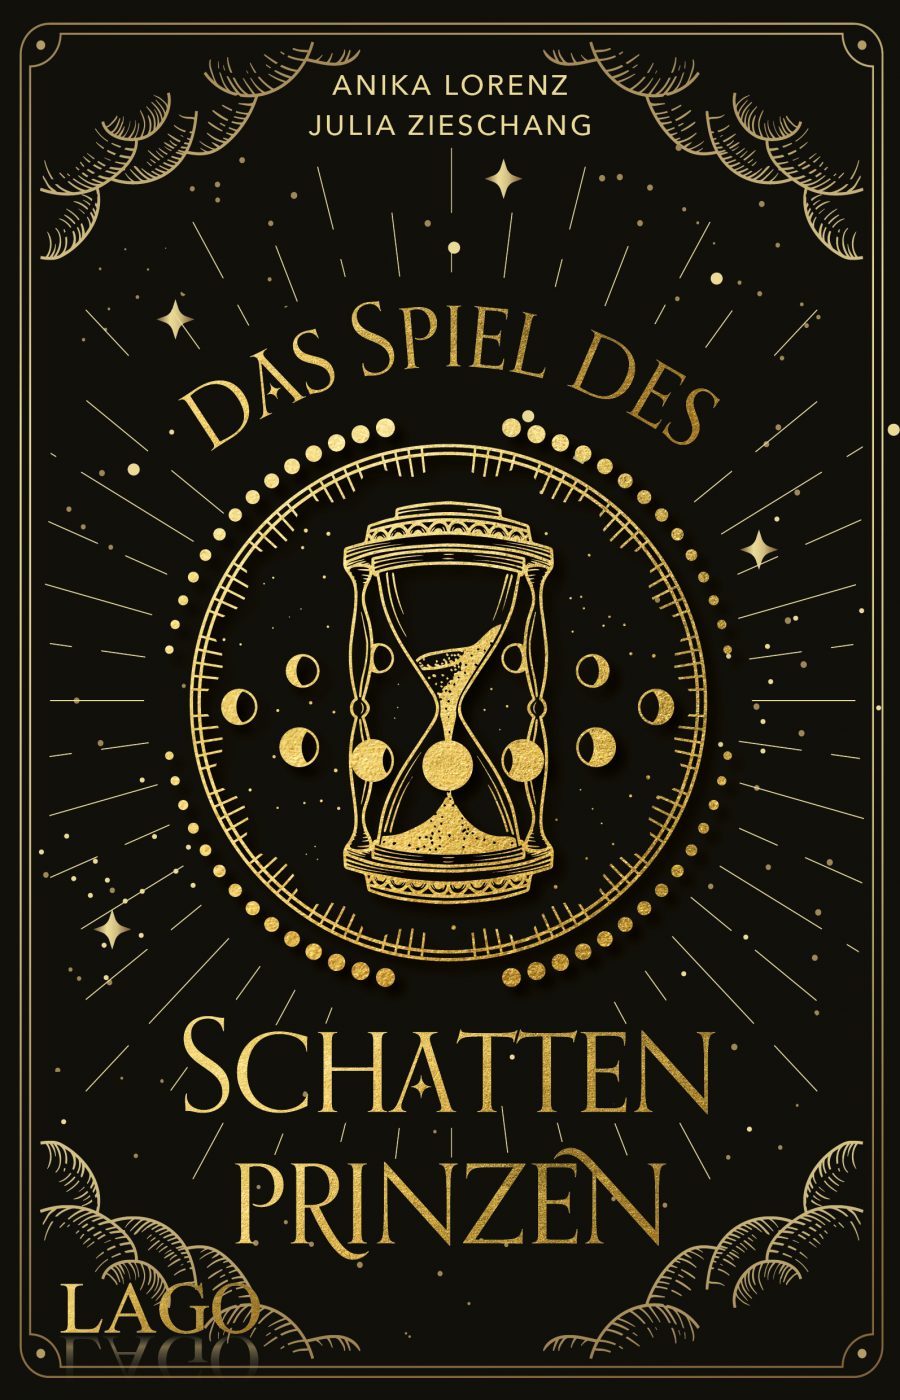 Schwarzes Cover mit goldener Schrift, Sanduhr und Mondphasen